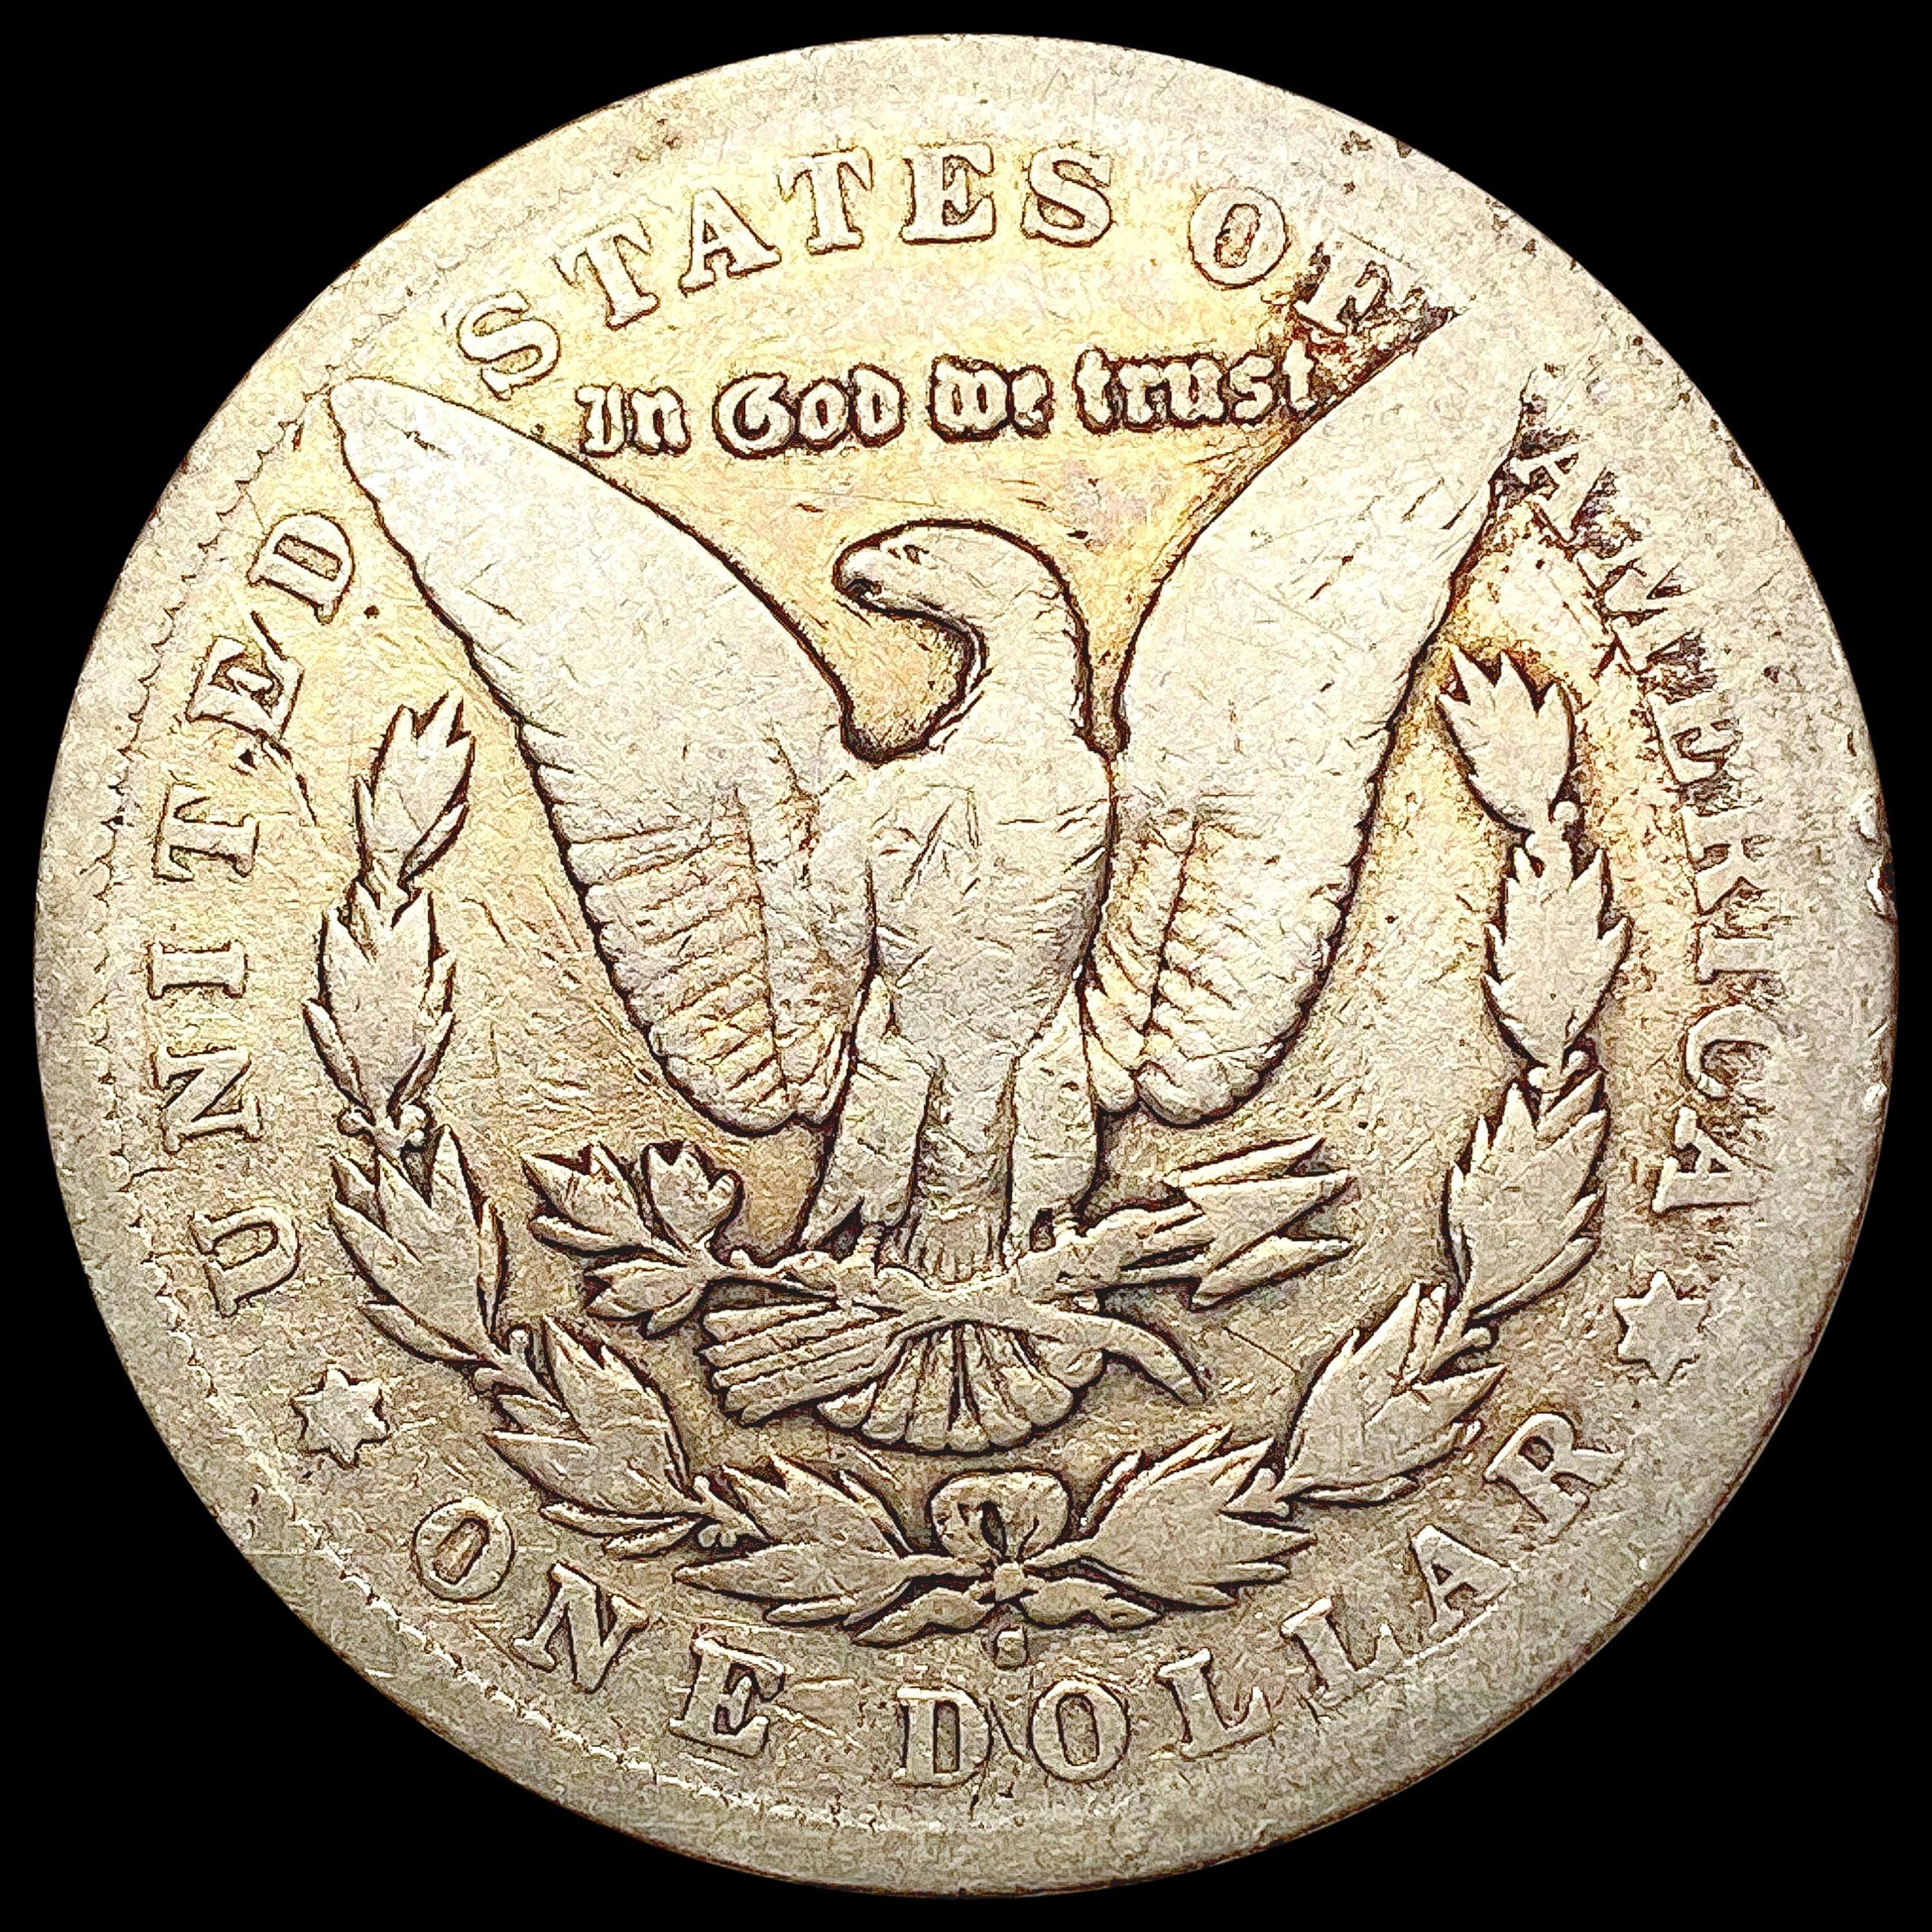 1903-S Micro S Morgan Silver Dollar NICELY CIRCULA